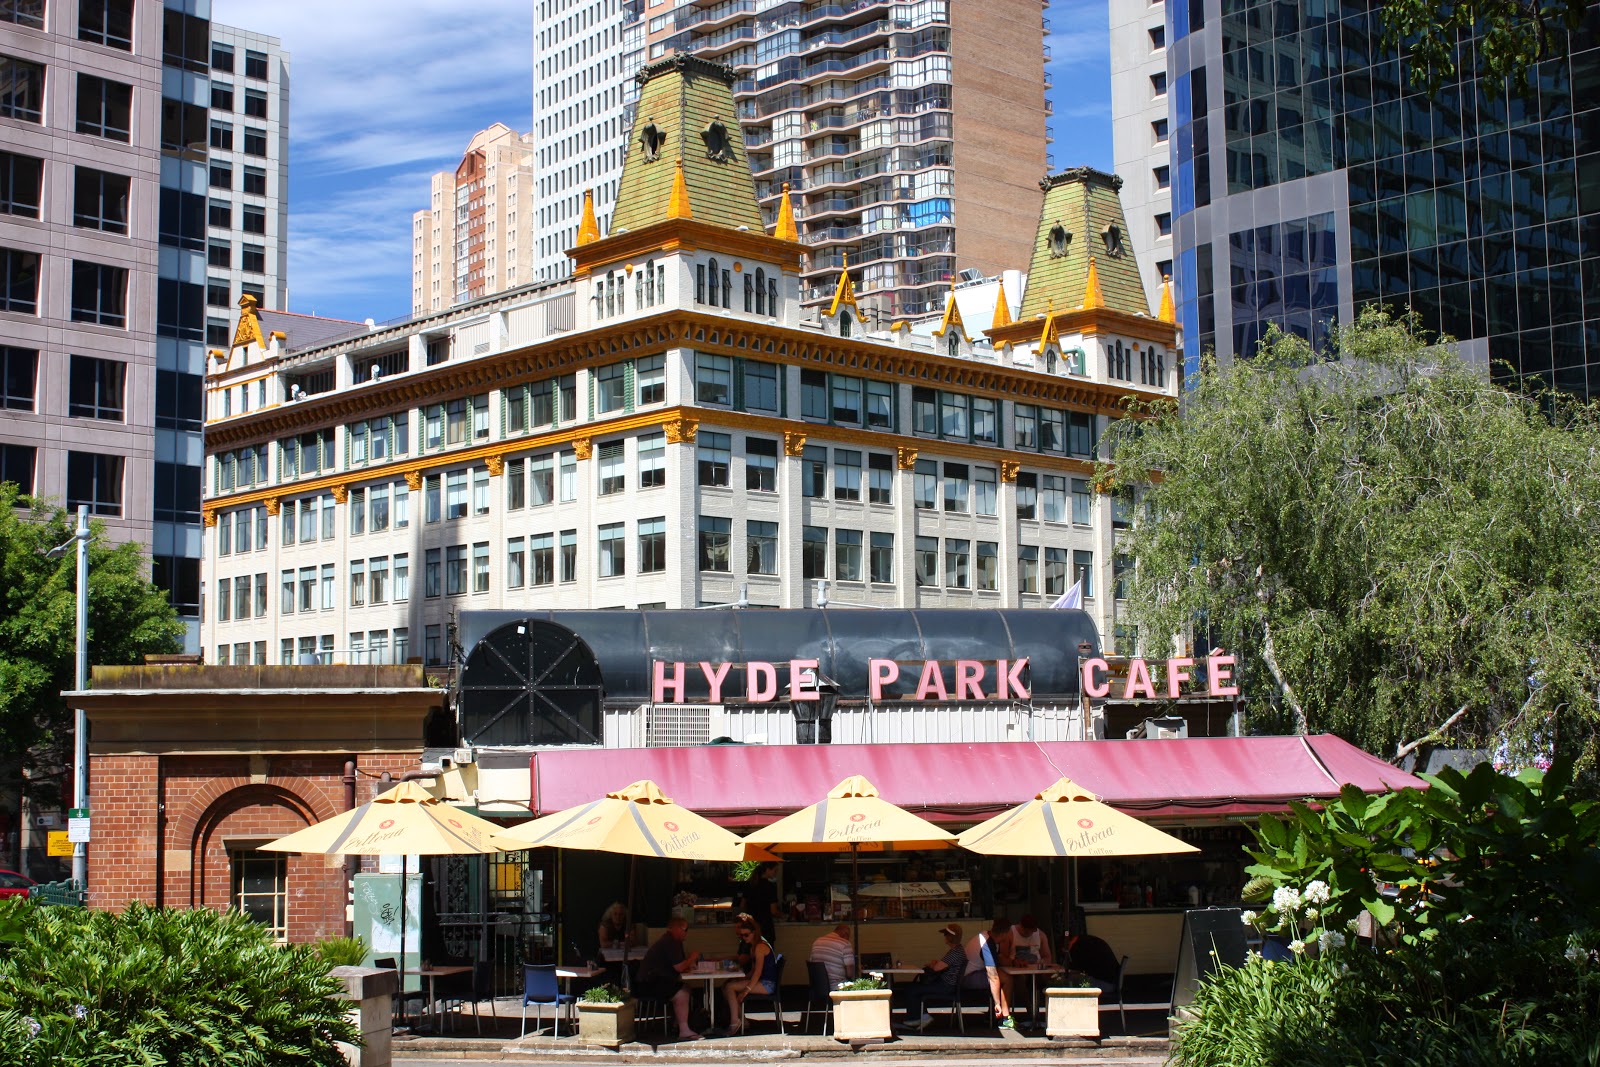 Sydney - City and Suburbs: Hyde Park Cafe